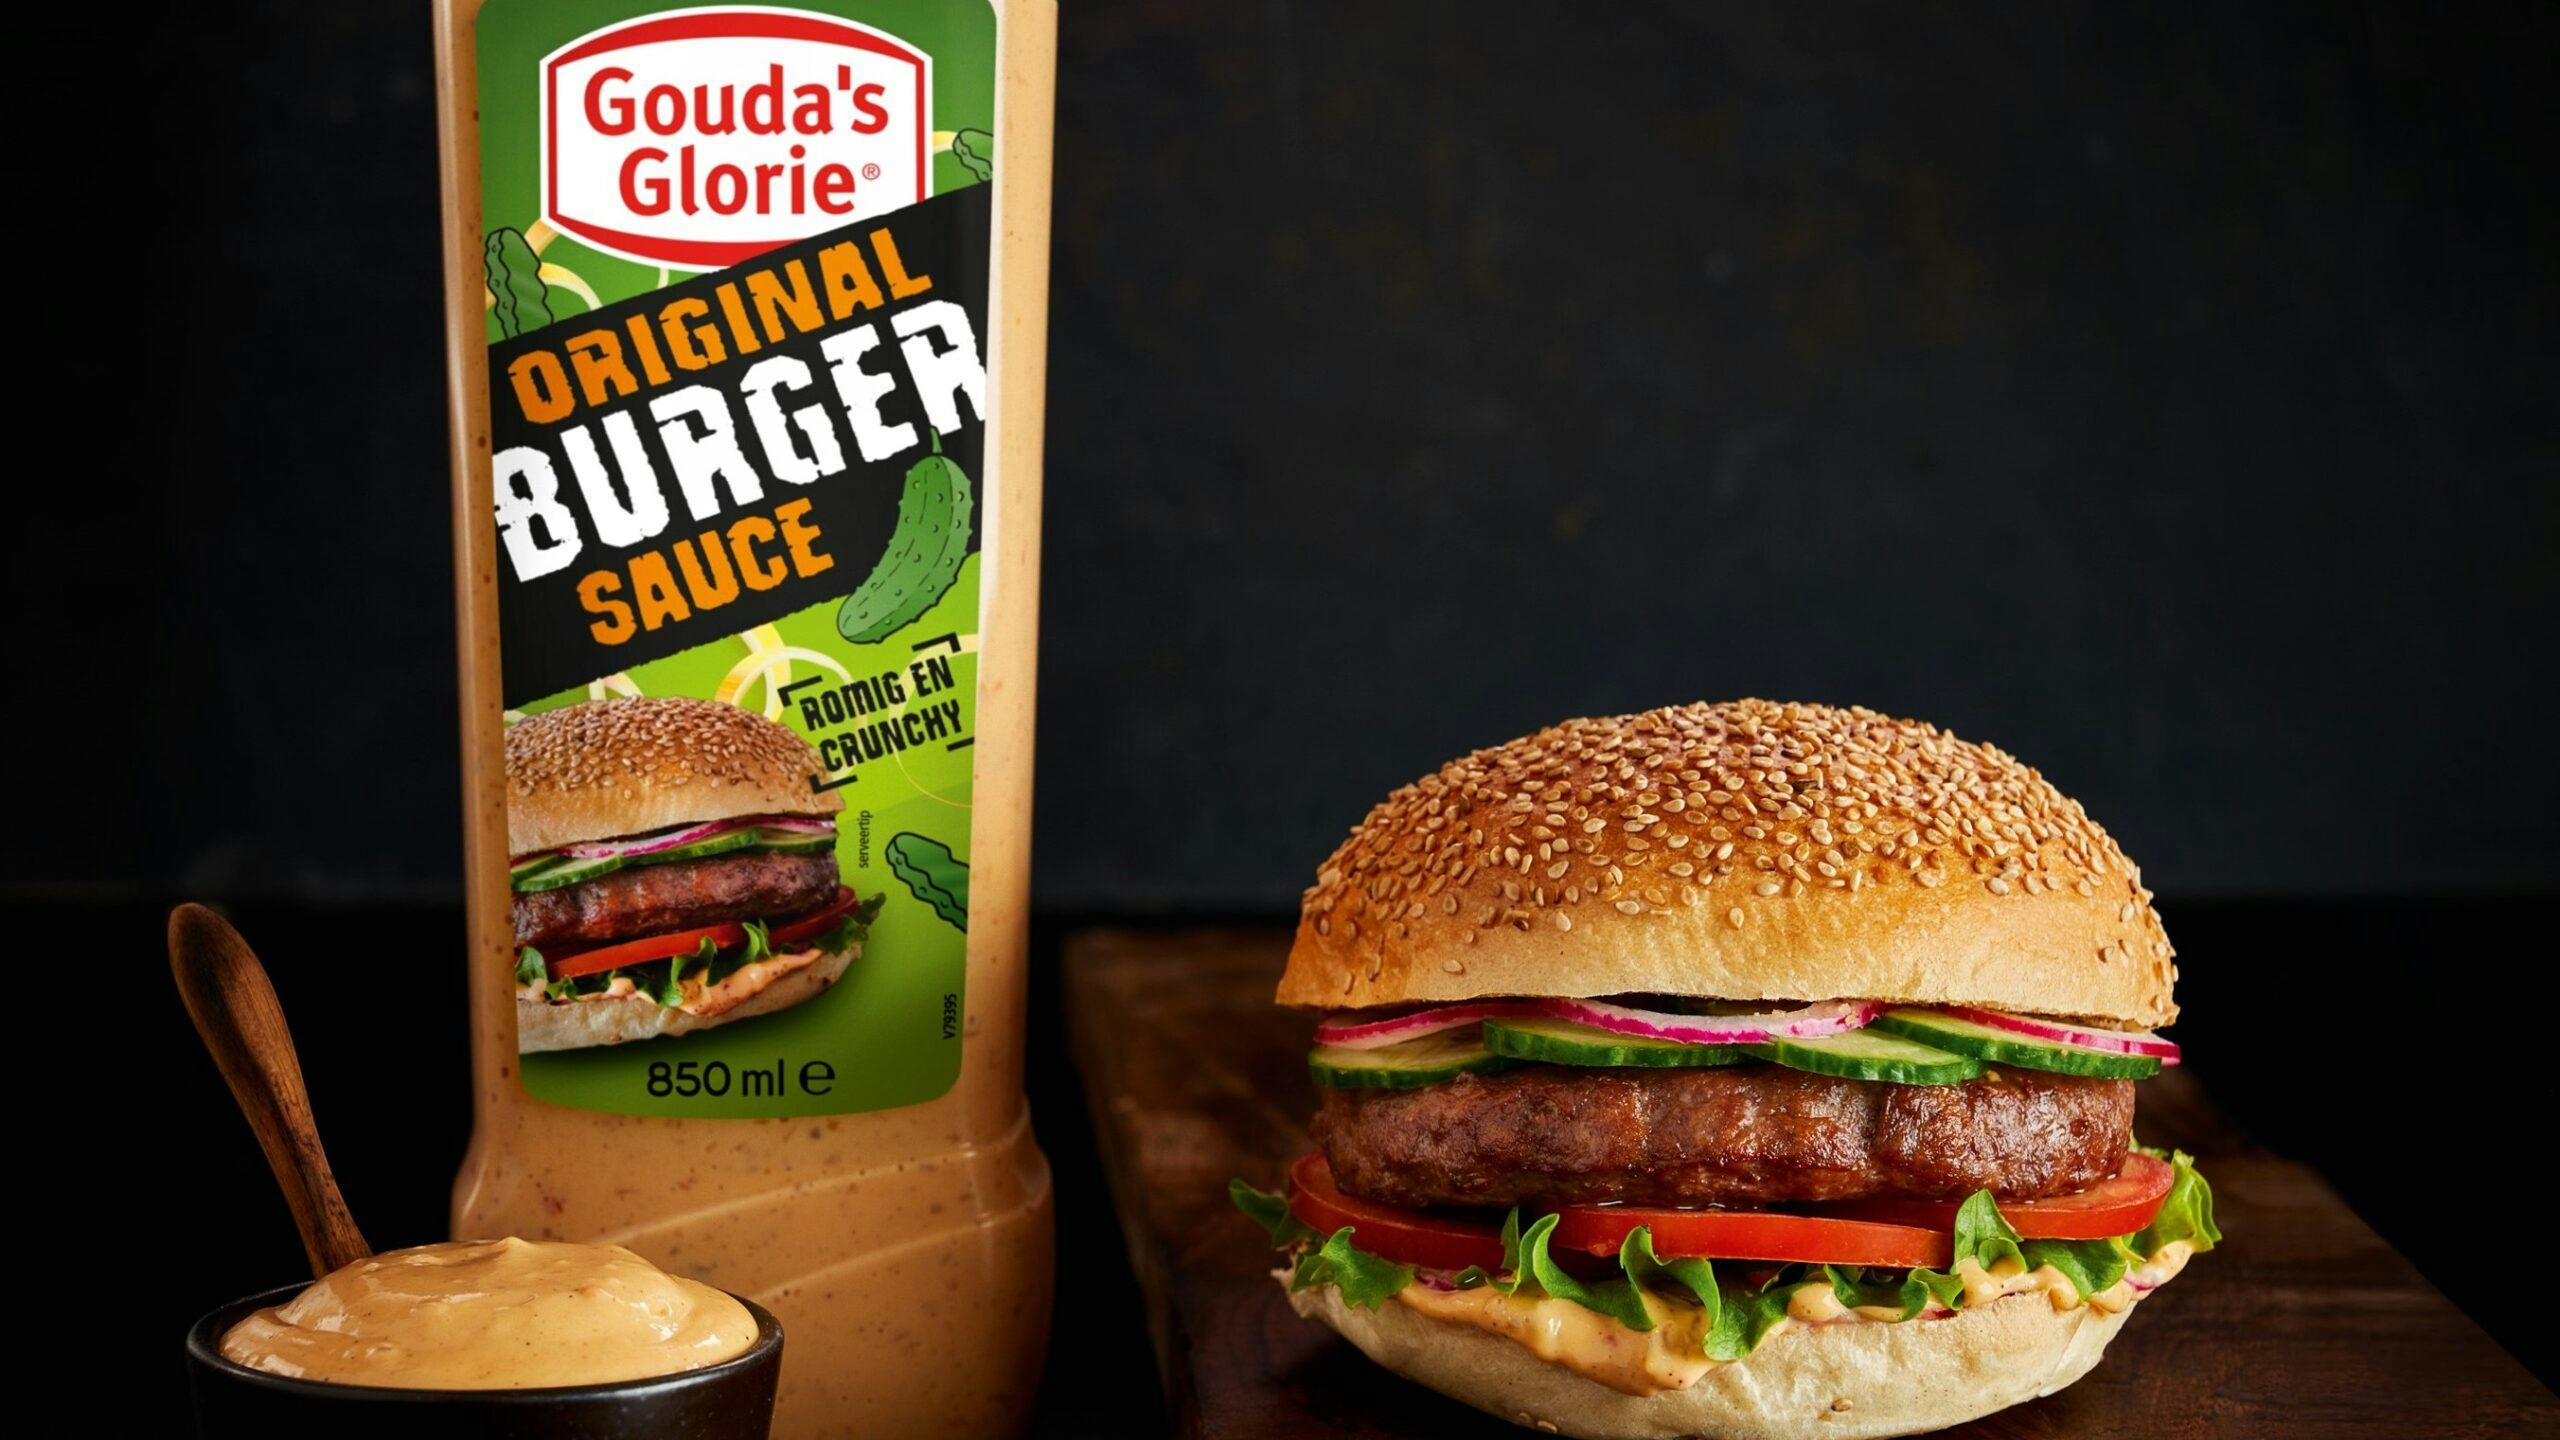 Gouda's Glorie Burger Sauce: rijk gevuld met stevige bite